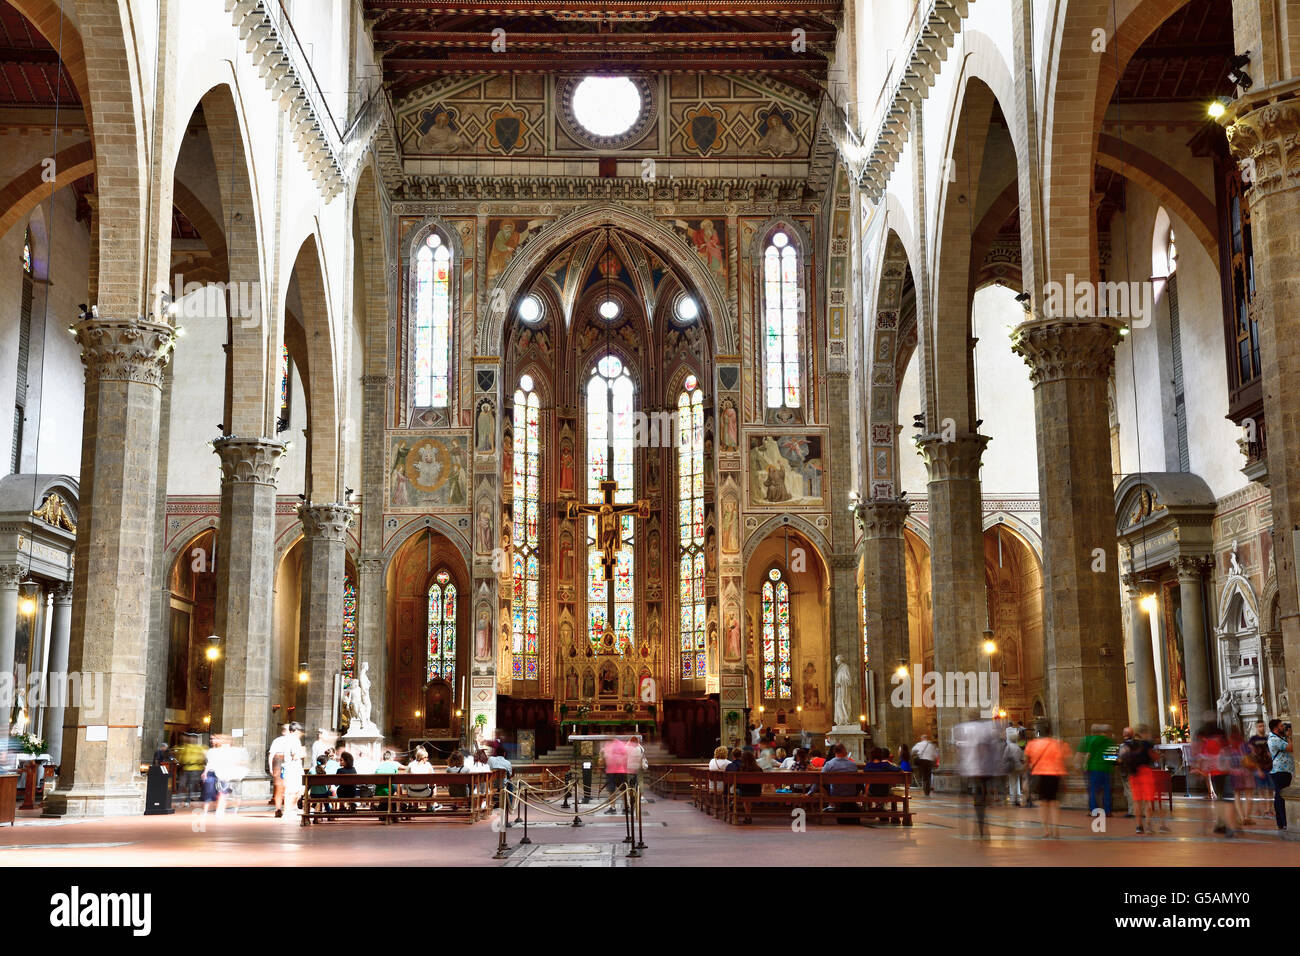 Das Innere der Basilika des Heiligen Kreuzes, die Basilica di Santa Croce  ist die Hauptkirche der Franziskaner in Florenz Stockfotografie - Alamy